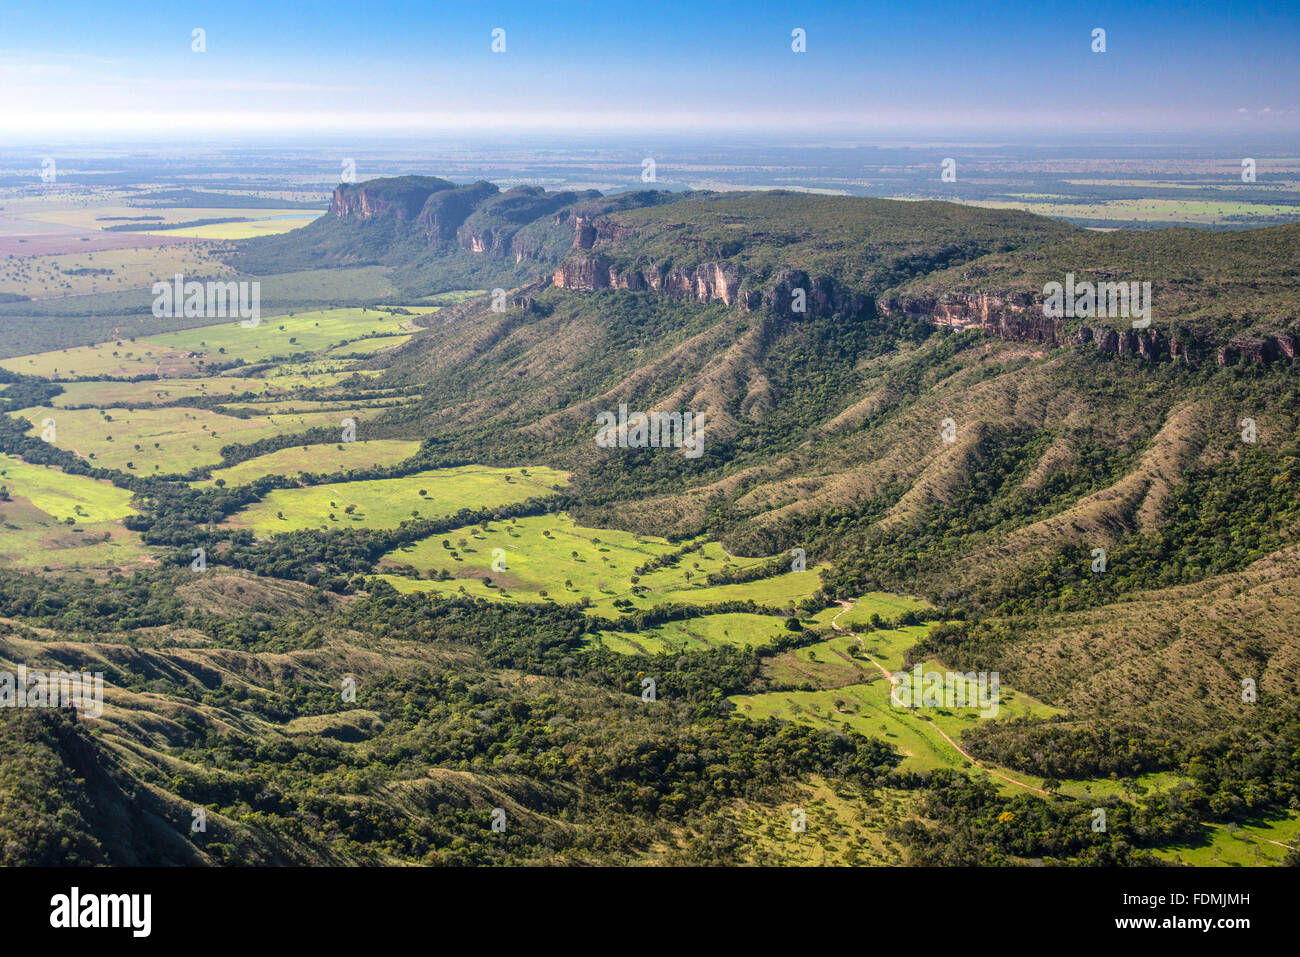 Aerial view of the Serra do Roncador Stock Photo